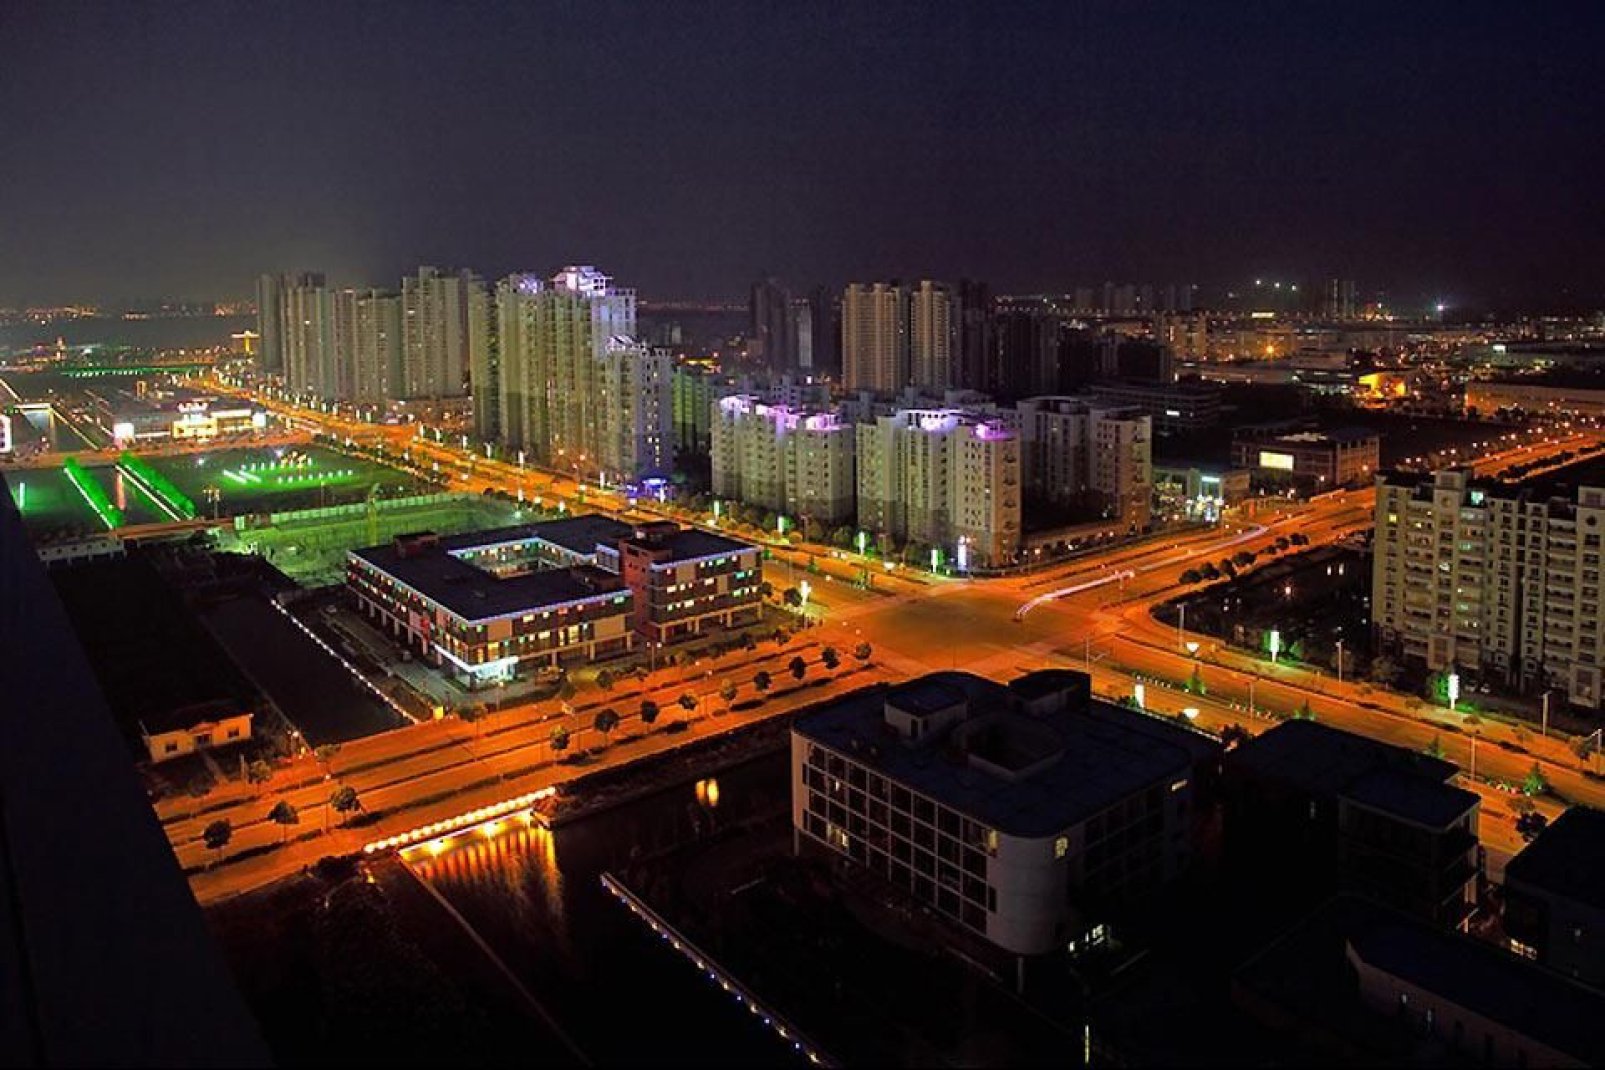 La città di Suzhou illuminata dalle sue luci notturne.